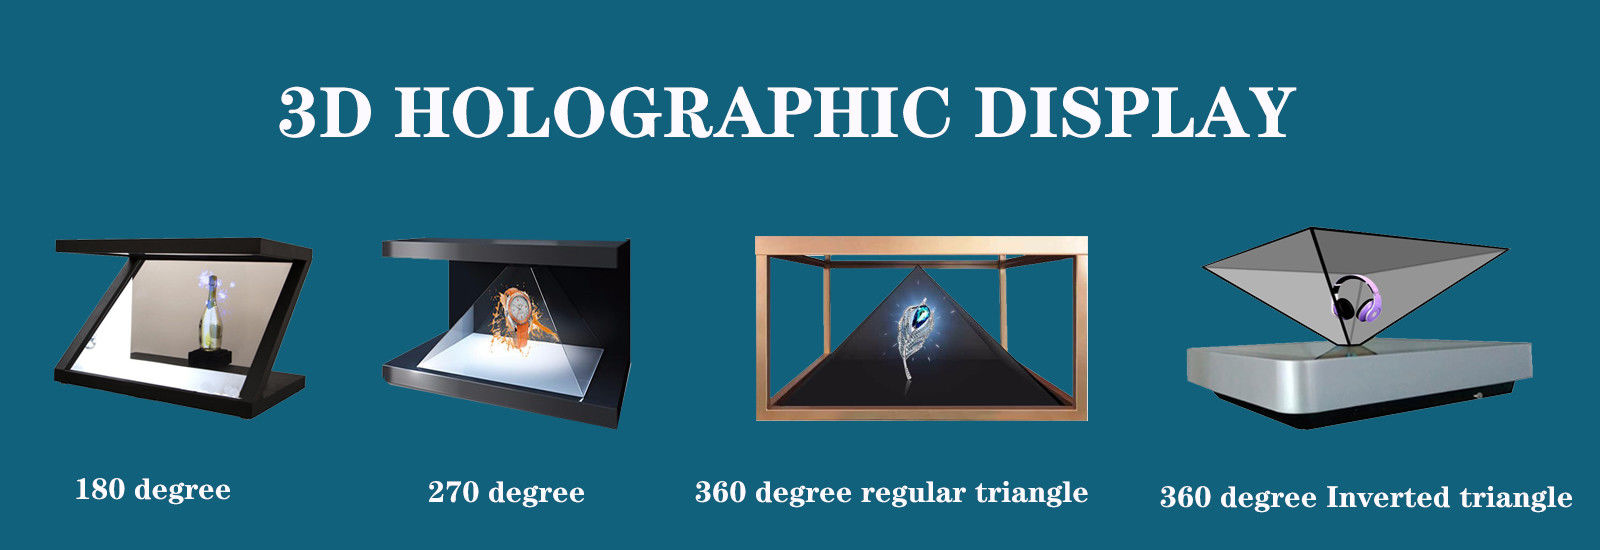 качество голографический дисплей 3D завод